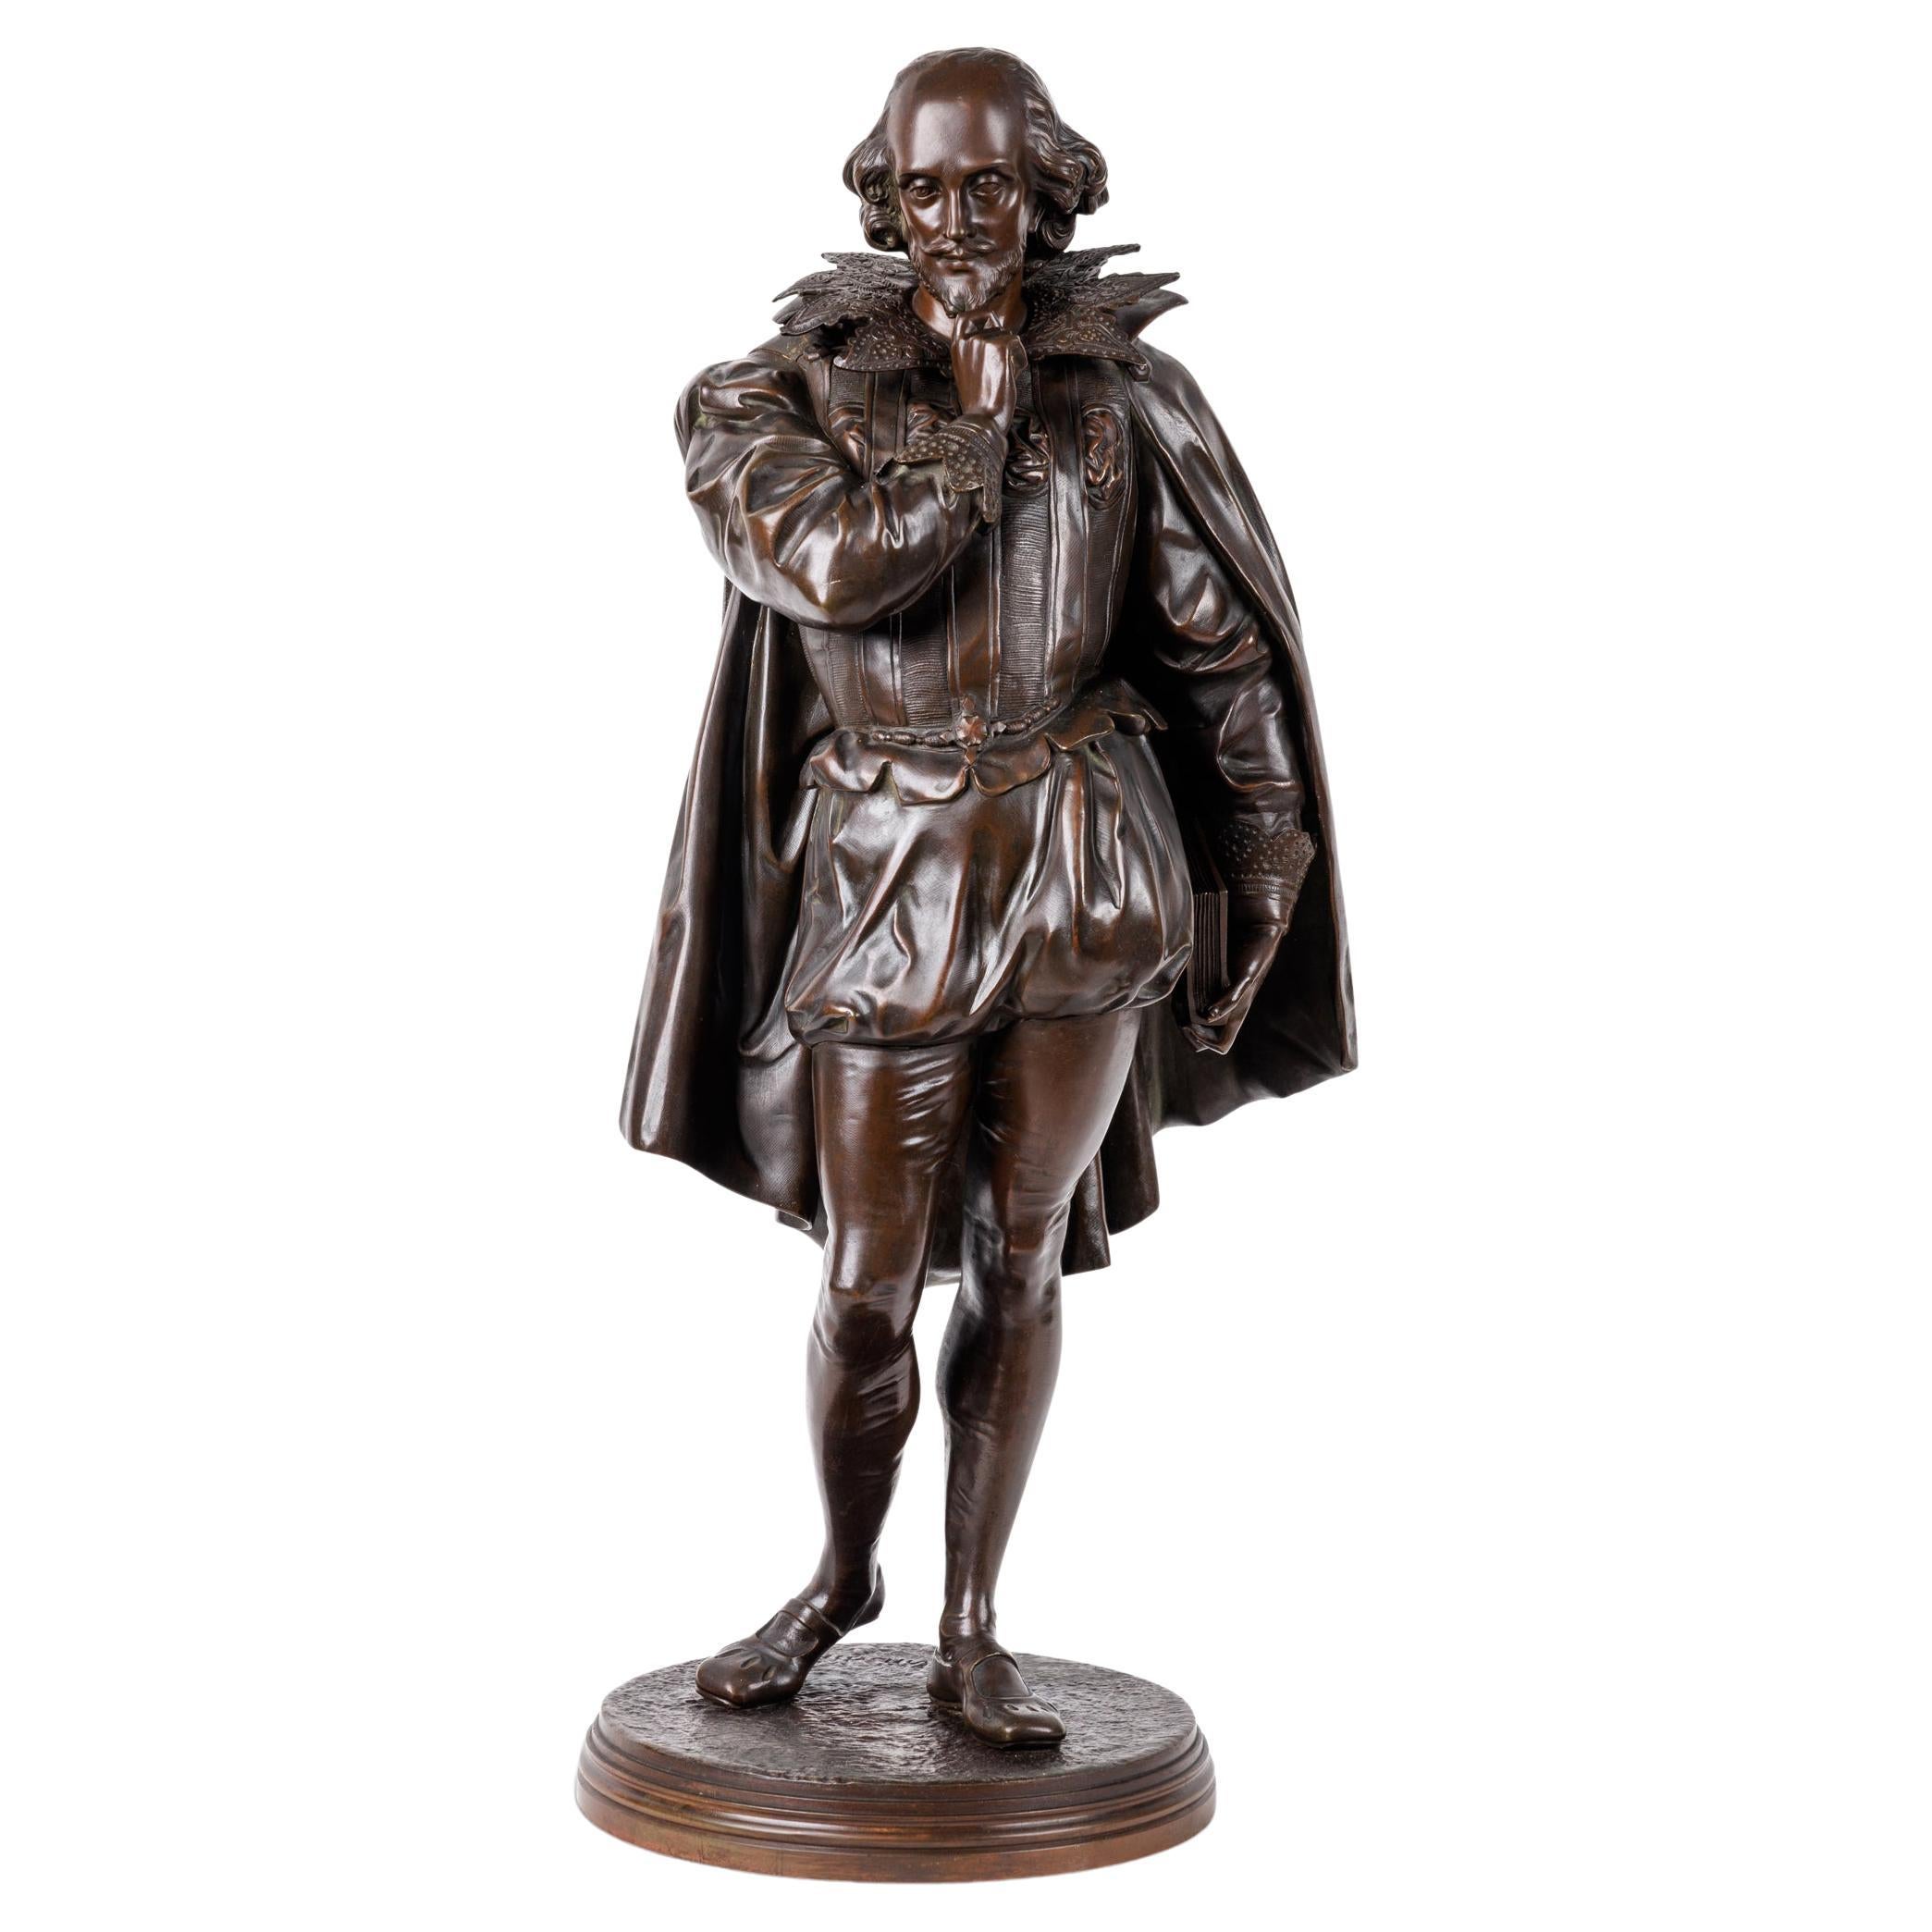 Jean Jules B. Salmson, Patinierte Bronzeskulptur von William Shakespeare